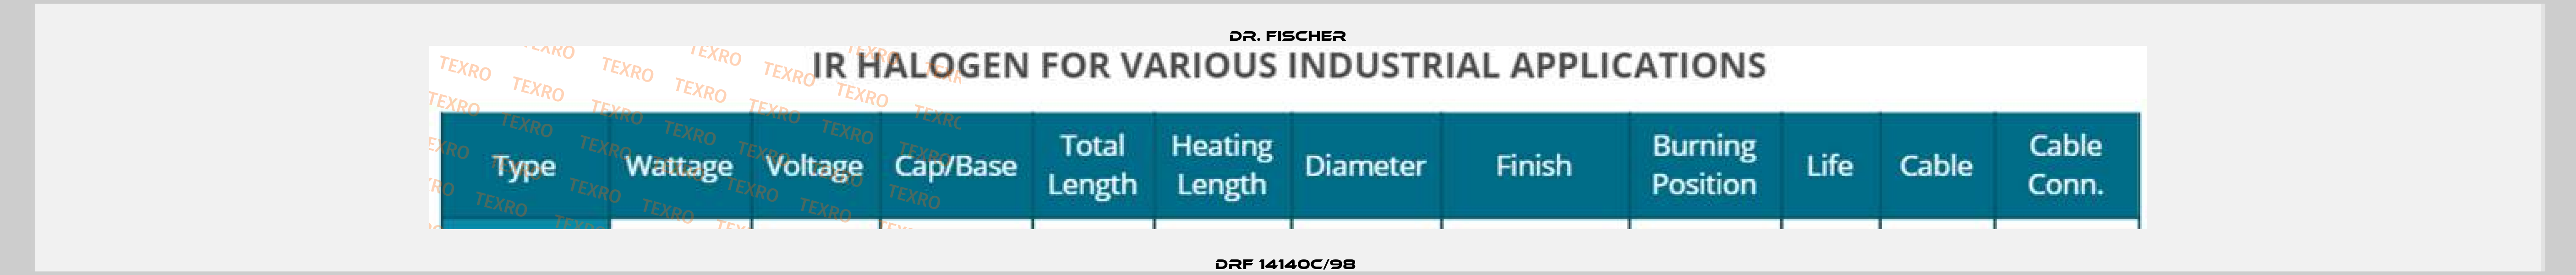 DRF 14140c/98  Dr. Fischer